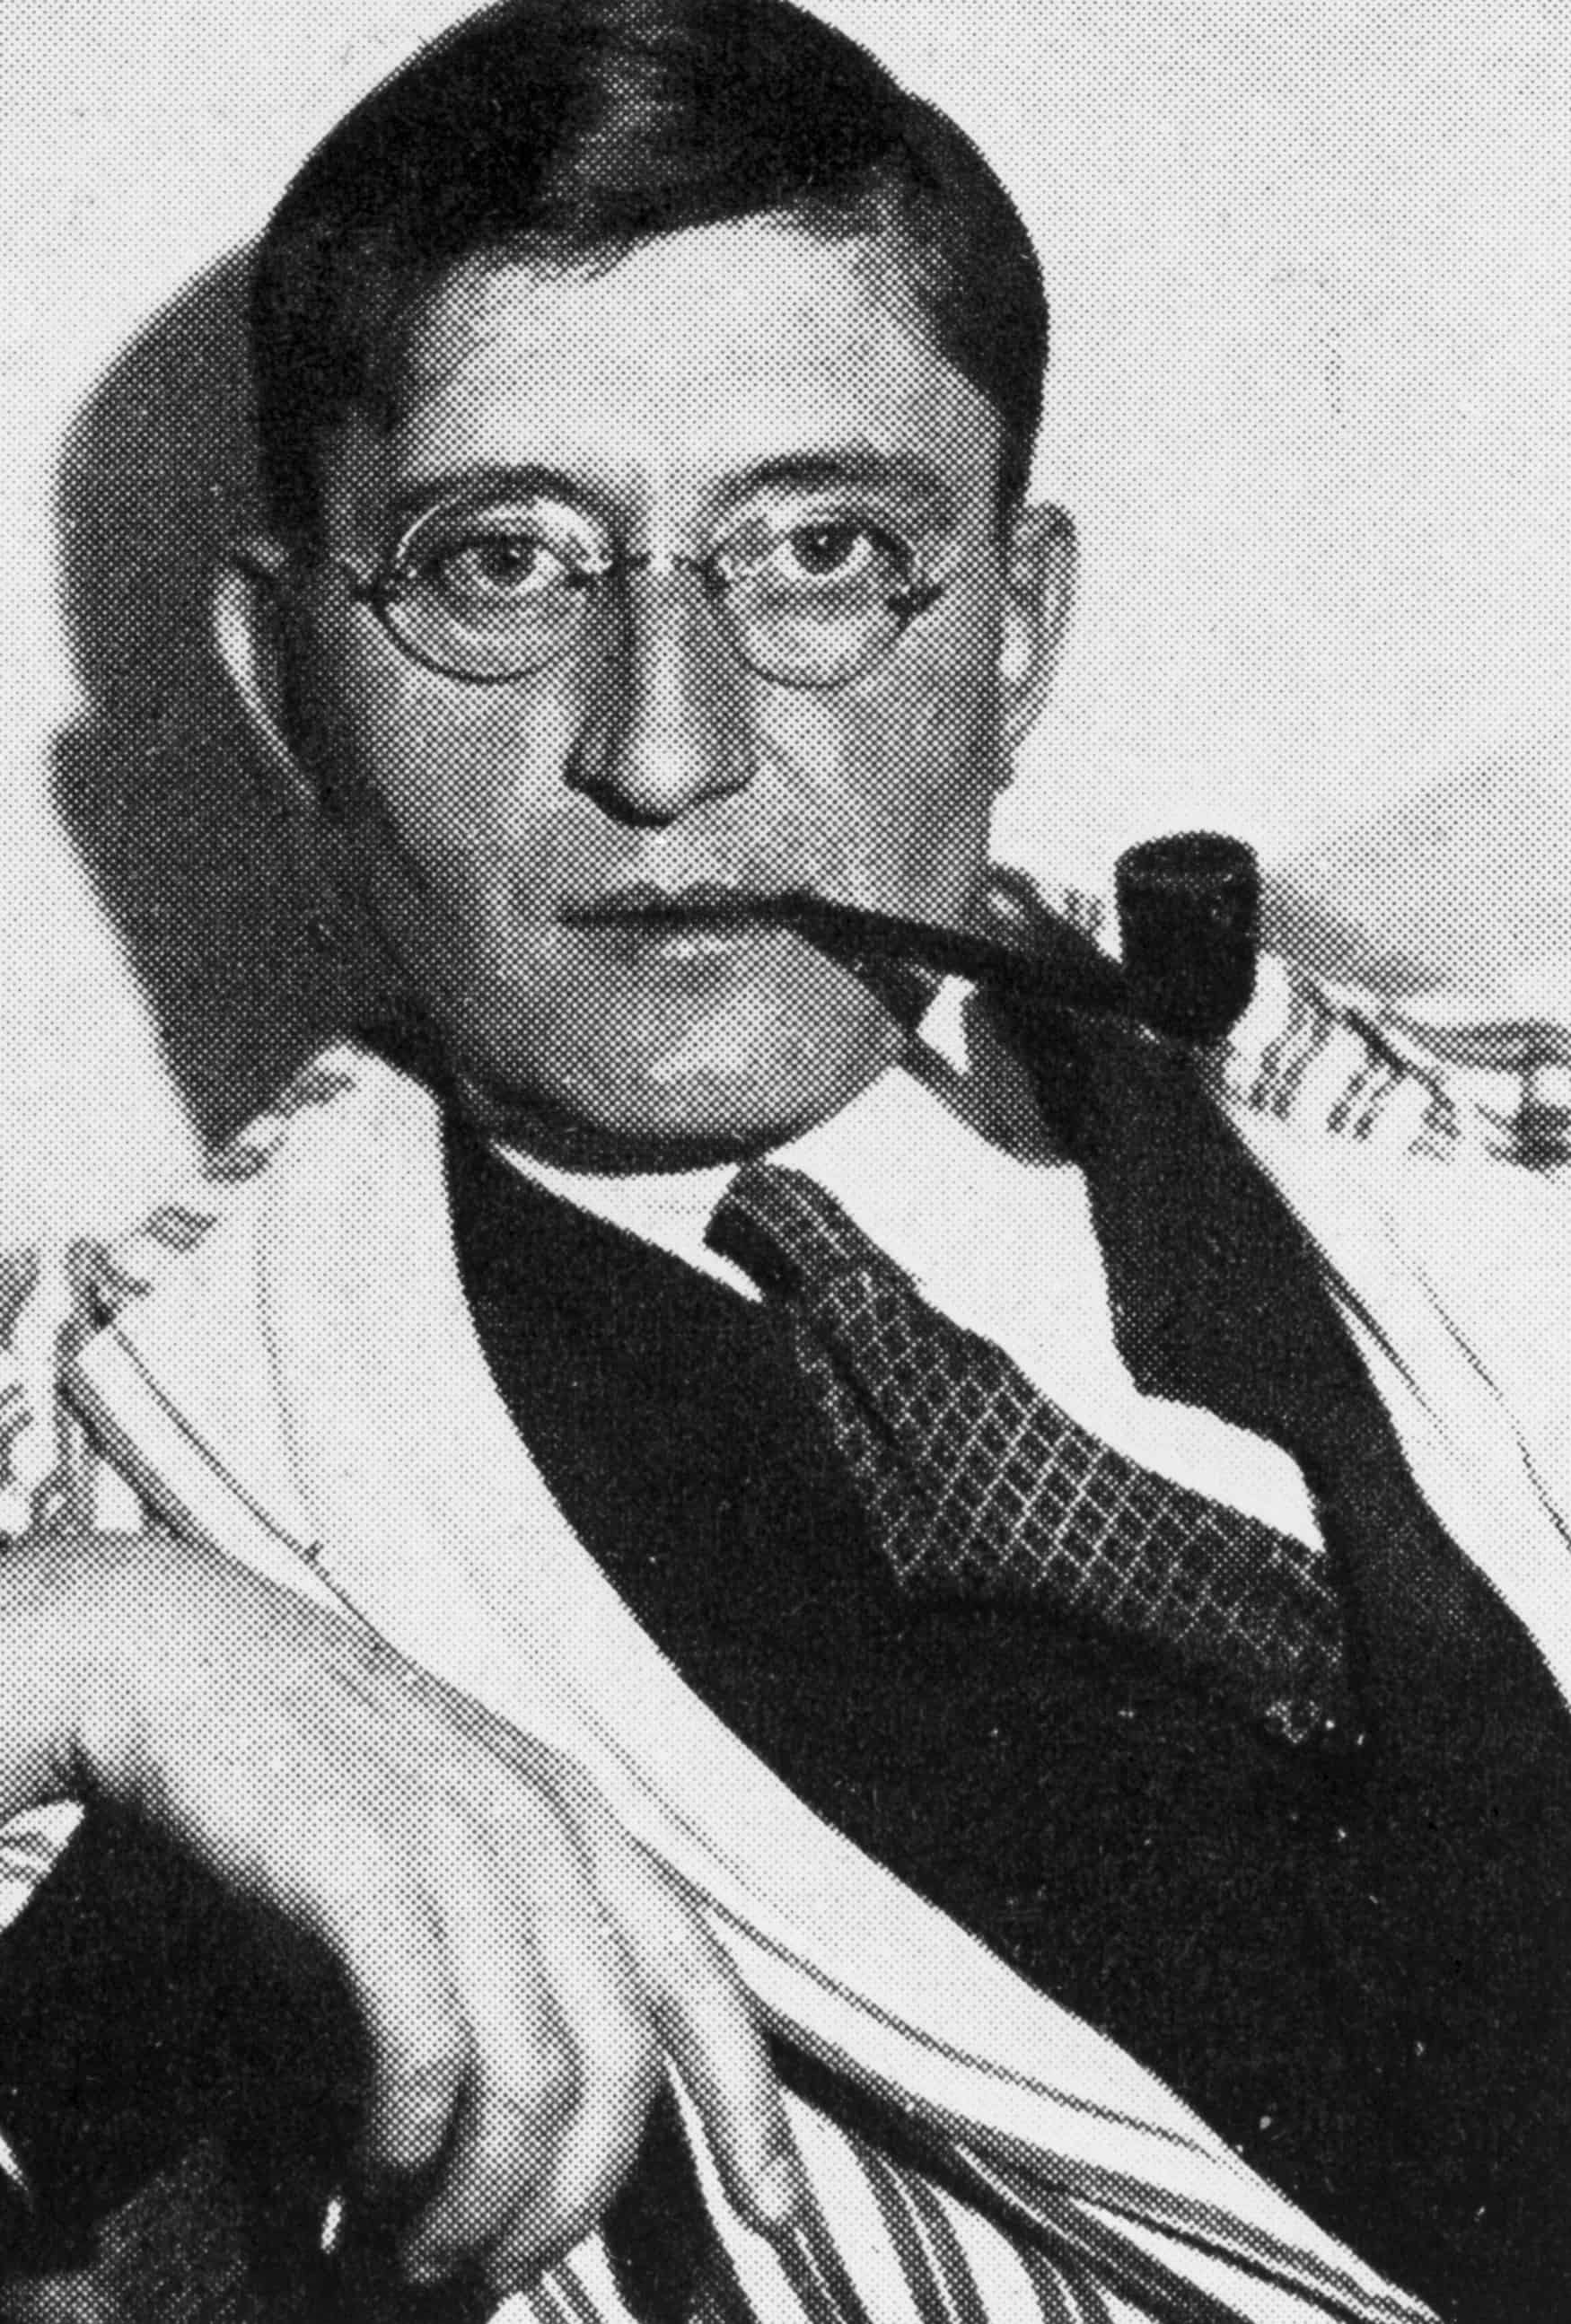 Porträt-Archivbild von Josef Albers. Ein dünner Mann mit Brille blickt in die Kamera.